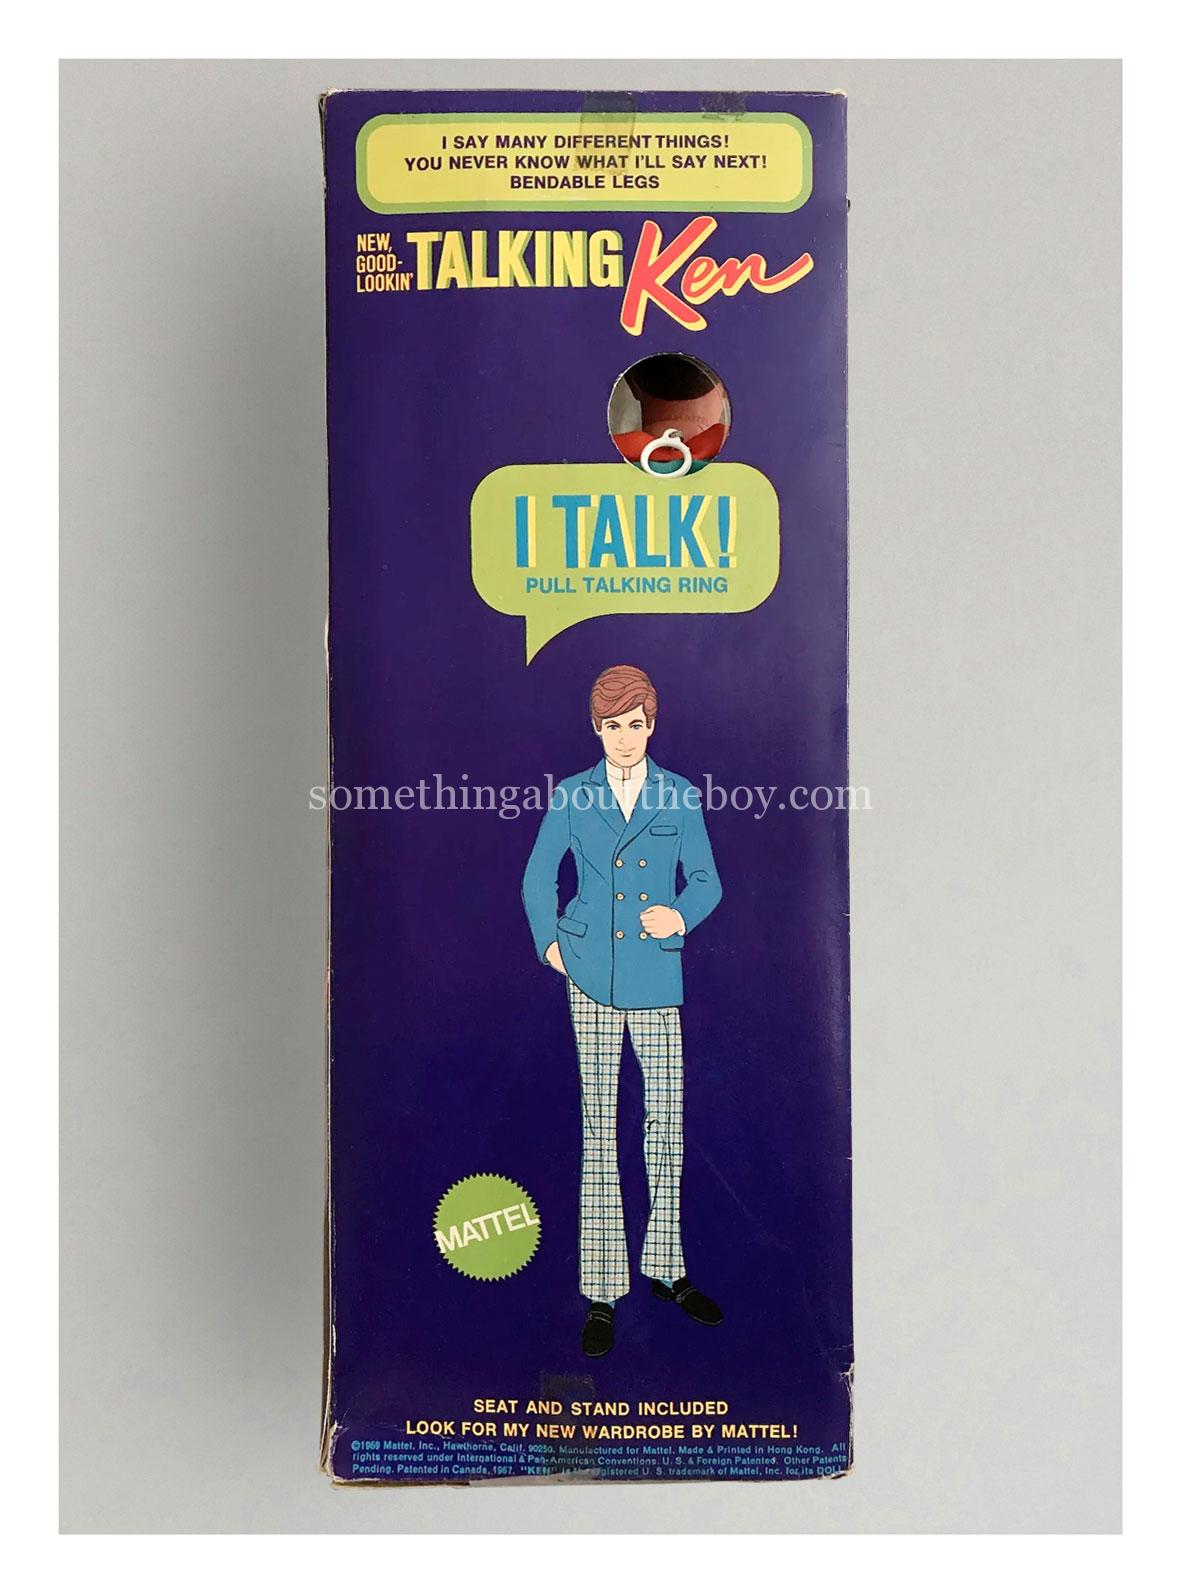 1970-71 #1111 New Good-Lookin' Talking Ken original packaging